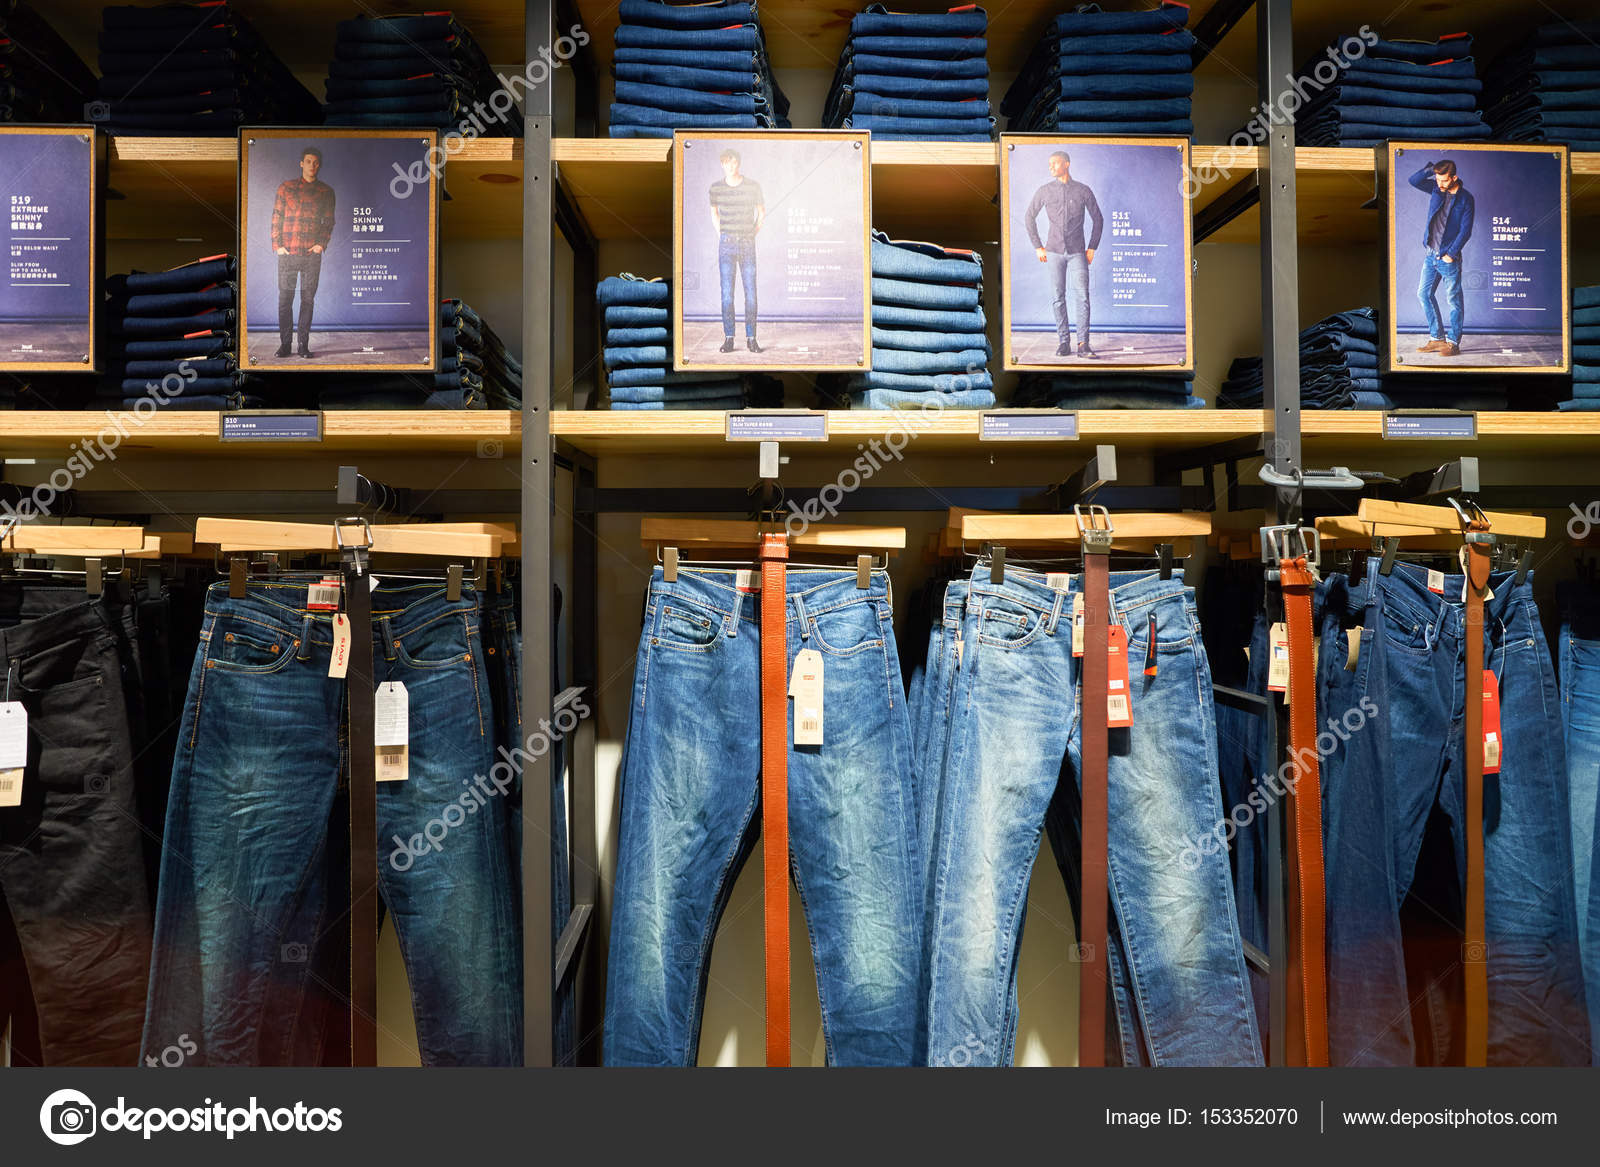 levis jean store near me